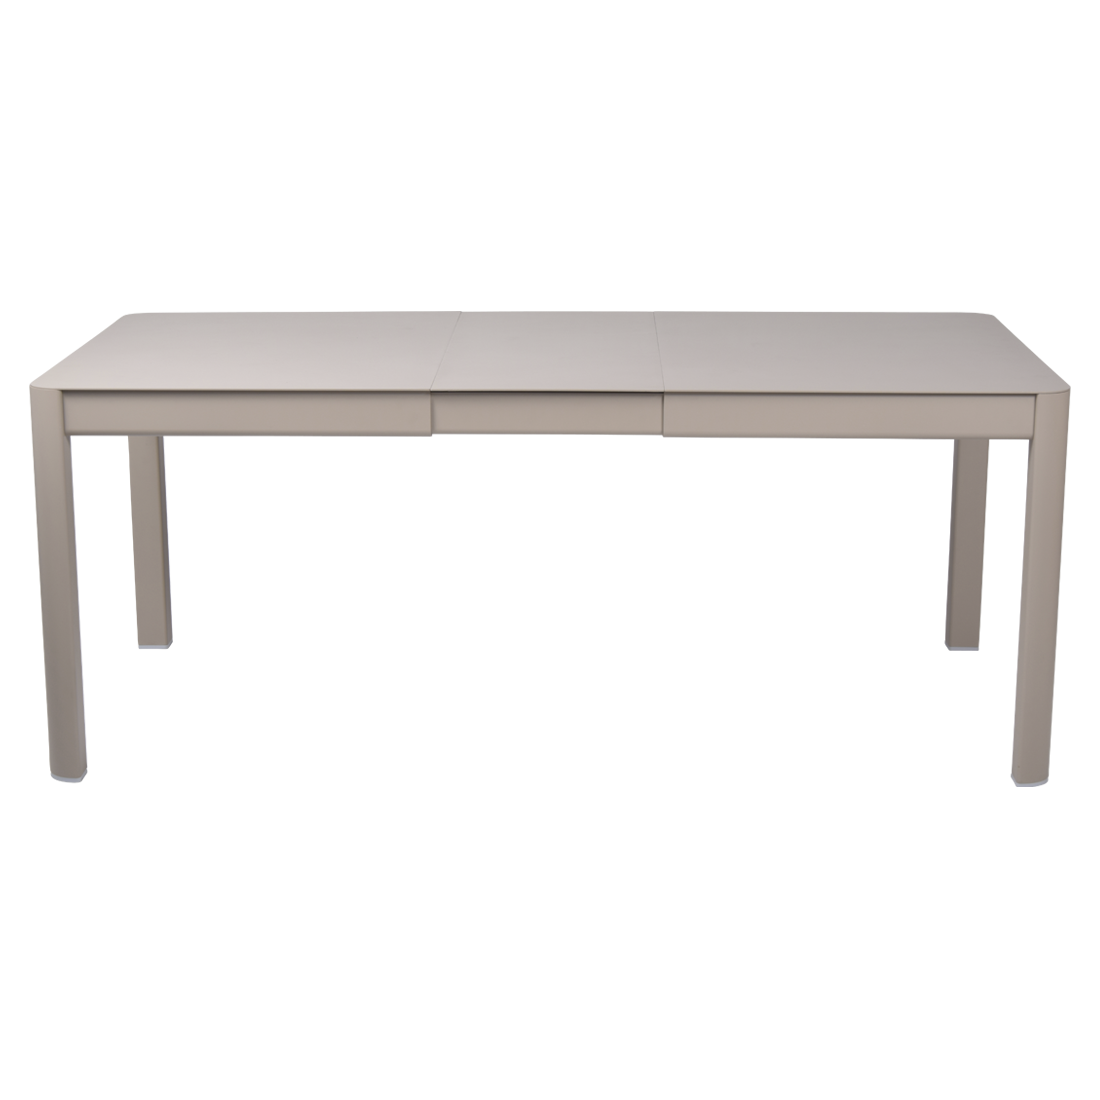 table de jardin beige, table metal allonge, table metal a rallonge, table metal rectangulaire, table fermob allonge